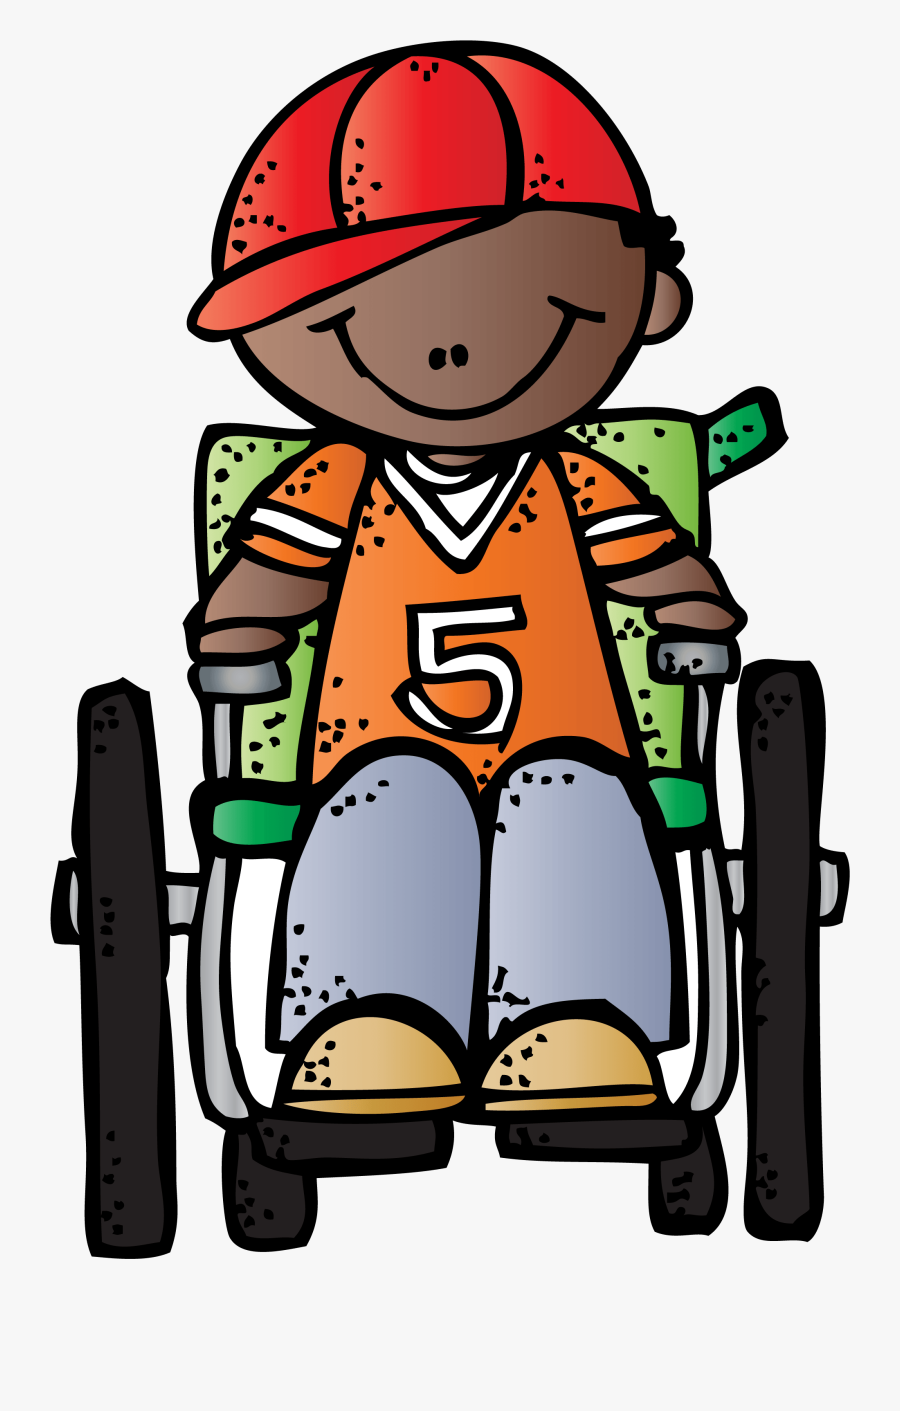 Wheelchair Pivot Patientin Wheel Chair Clipart Clipartfest - Child In Wheelchair Clipart, Transparent Clipart